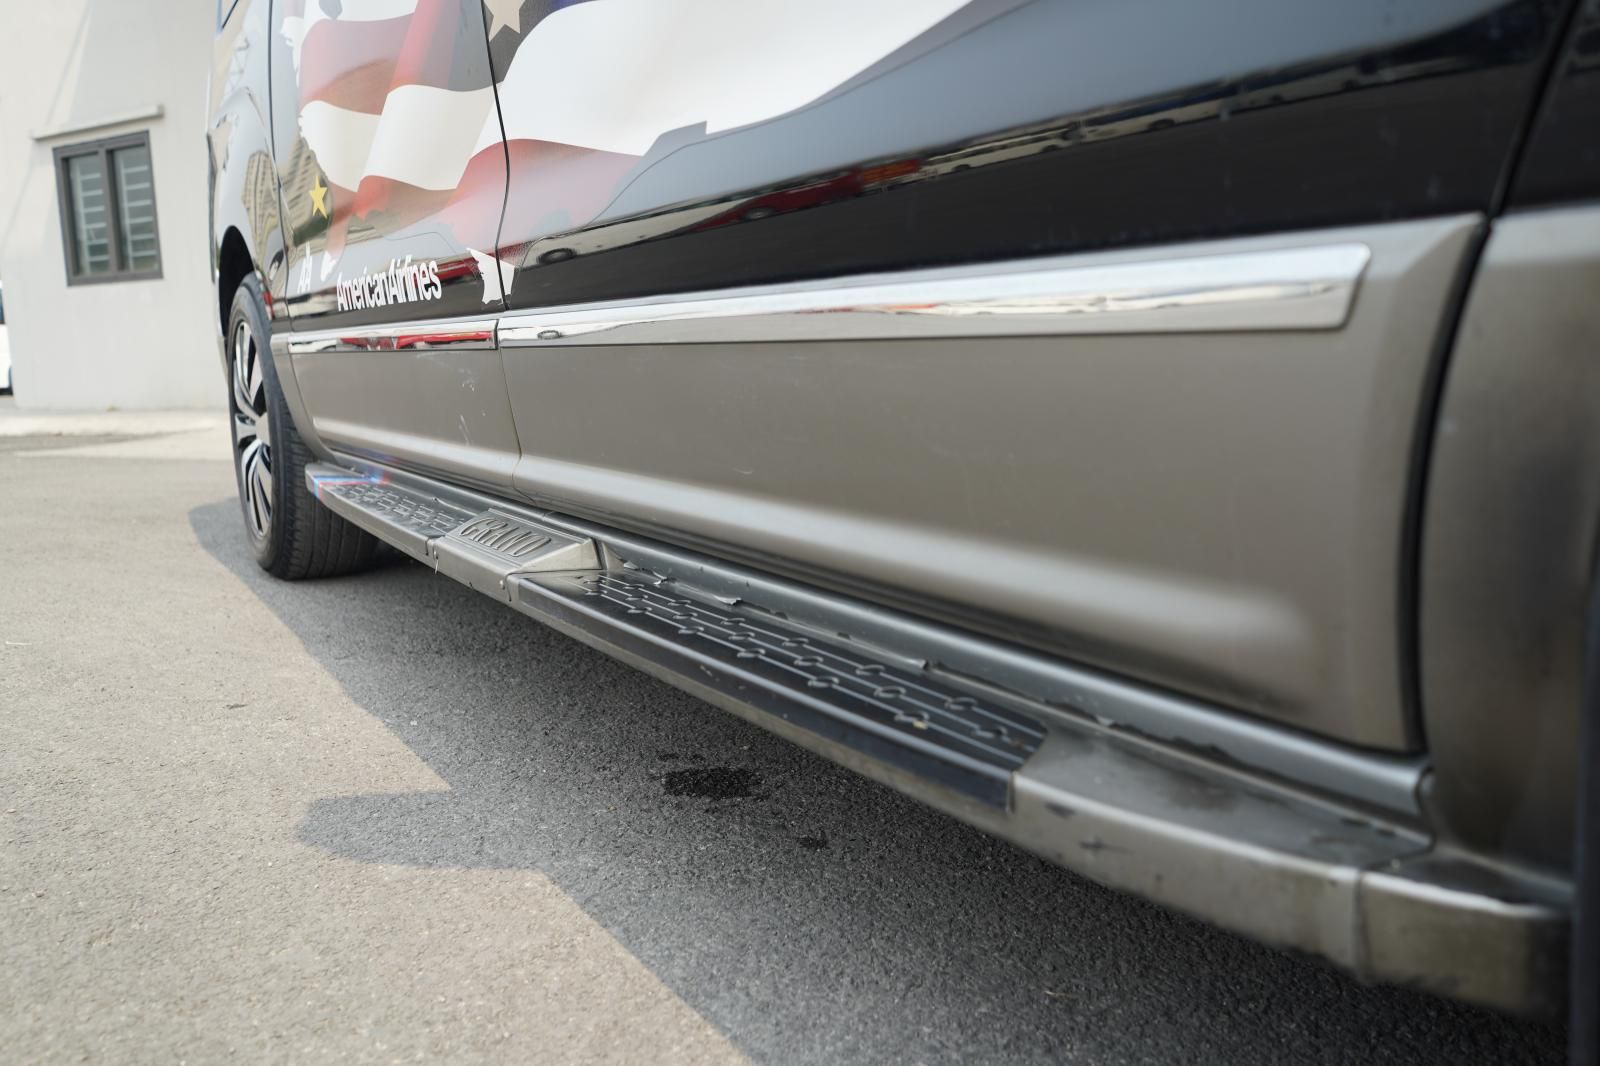 Hyundai Grand Starex 2014 - Bản Limousine, máy xăng số tự động, 09 chỗ, biển TP